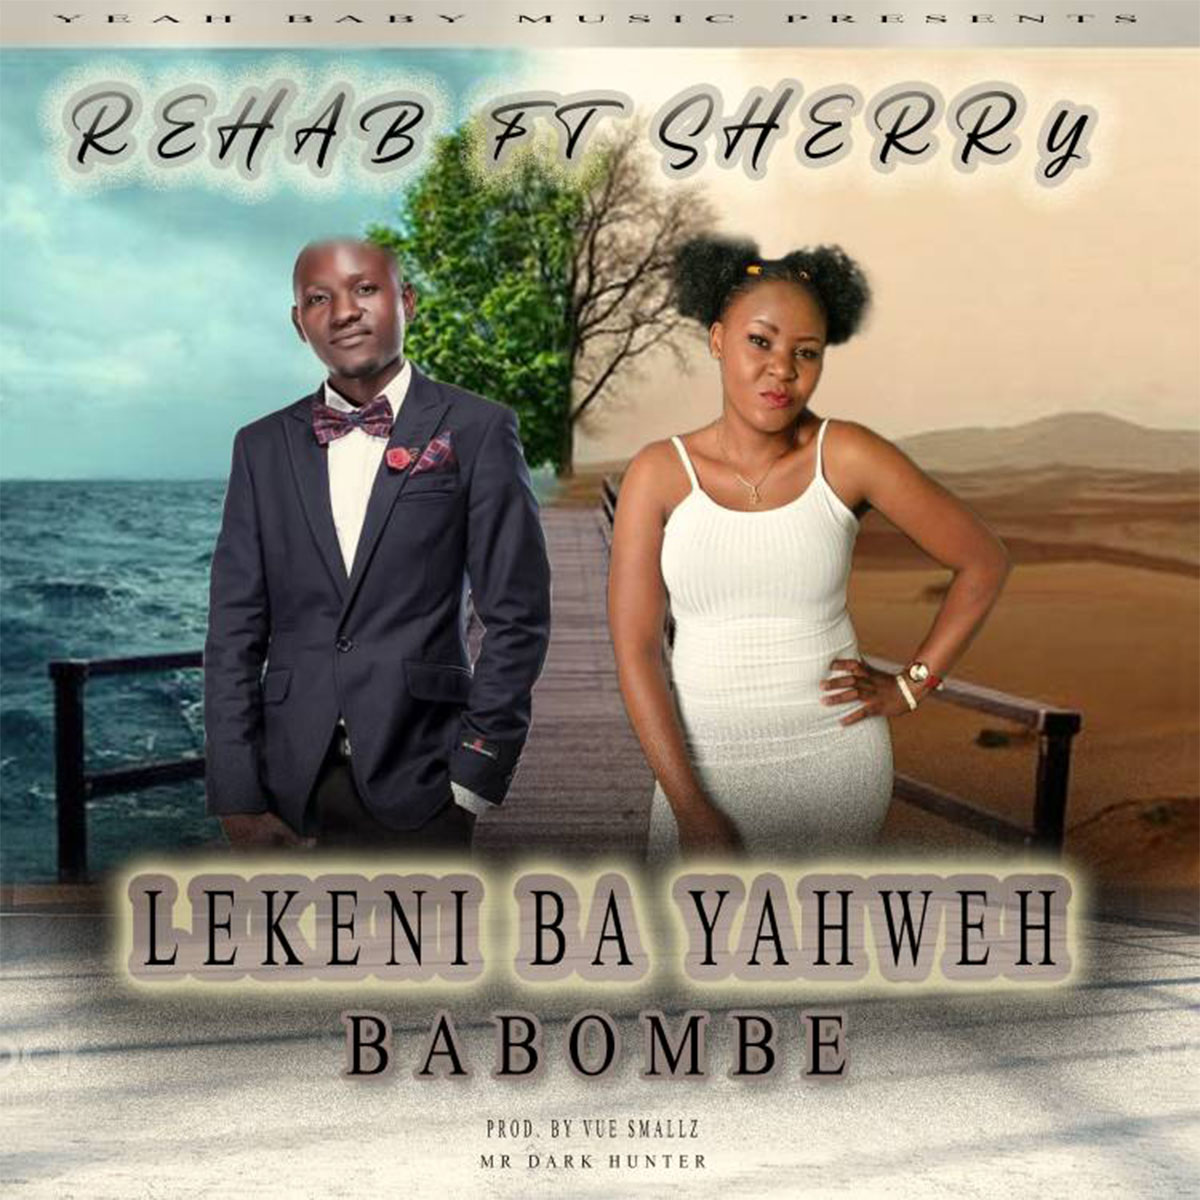 Rehab ft. Sherry - Lekeni Ba Yahweh Babombe